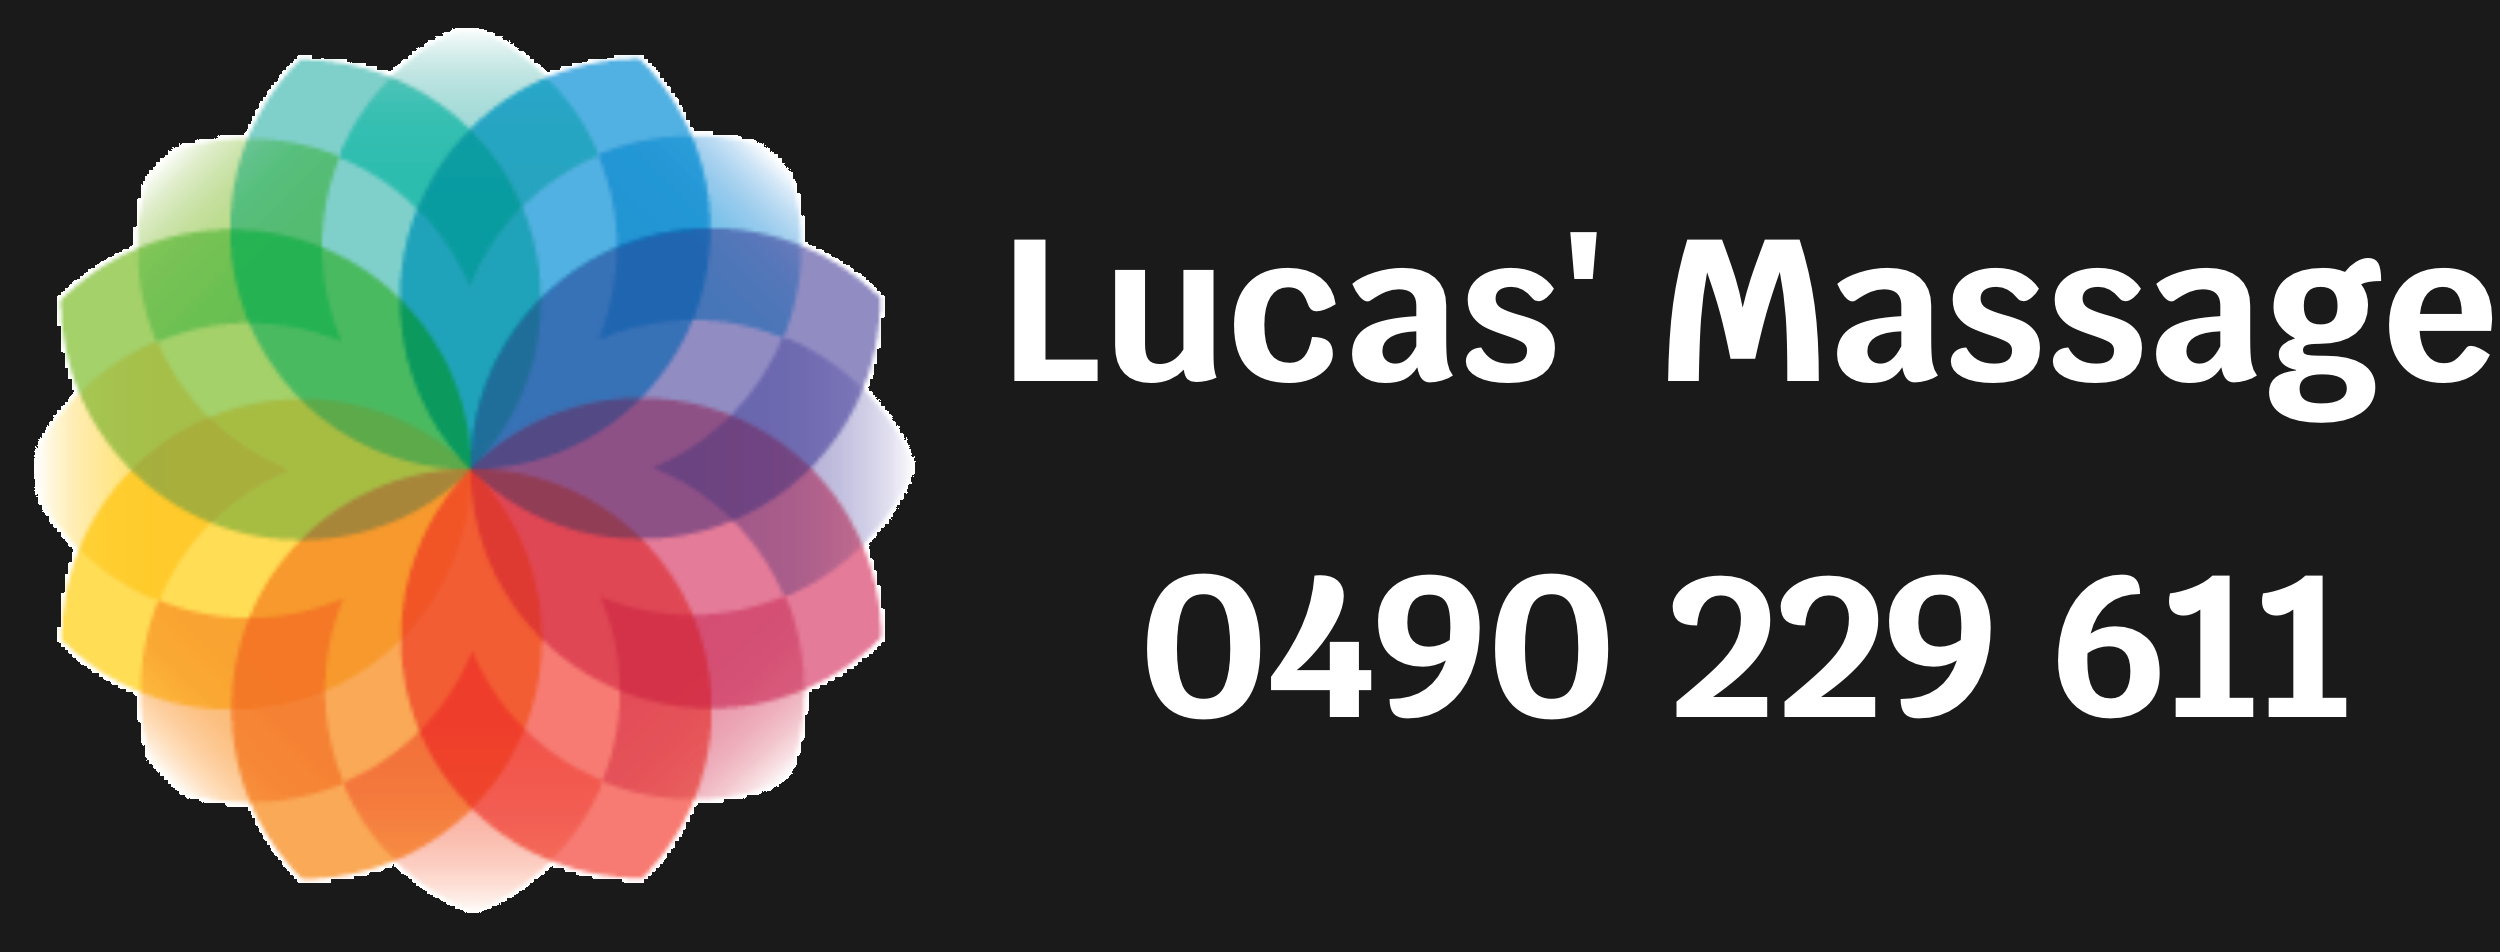 Lucas' Massage